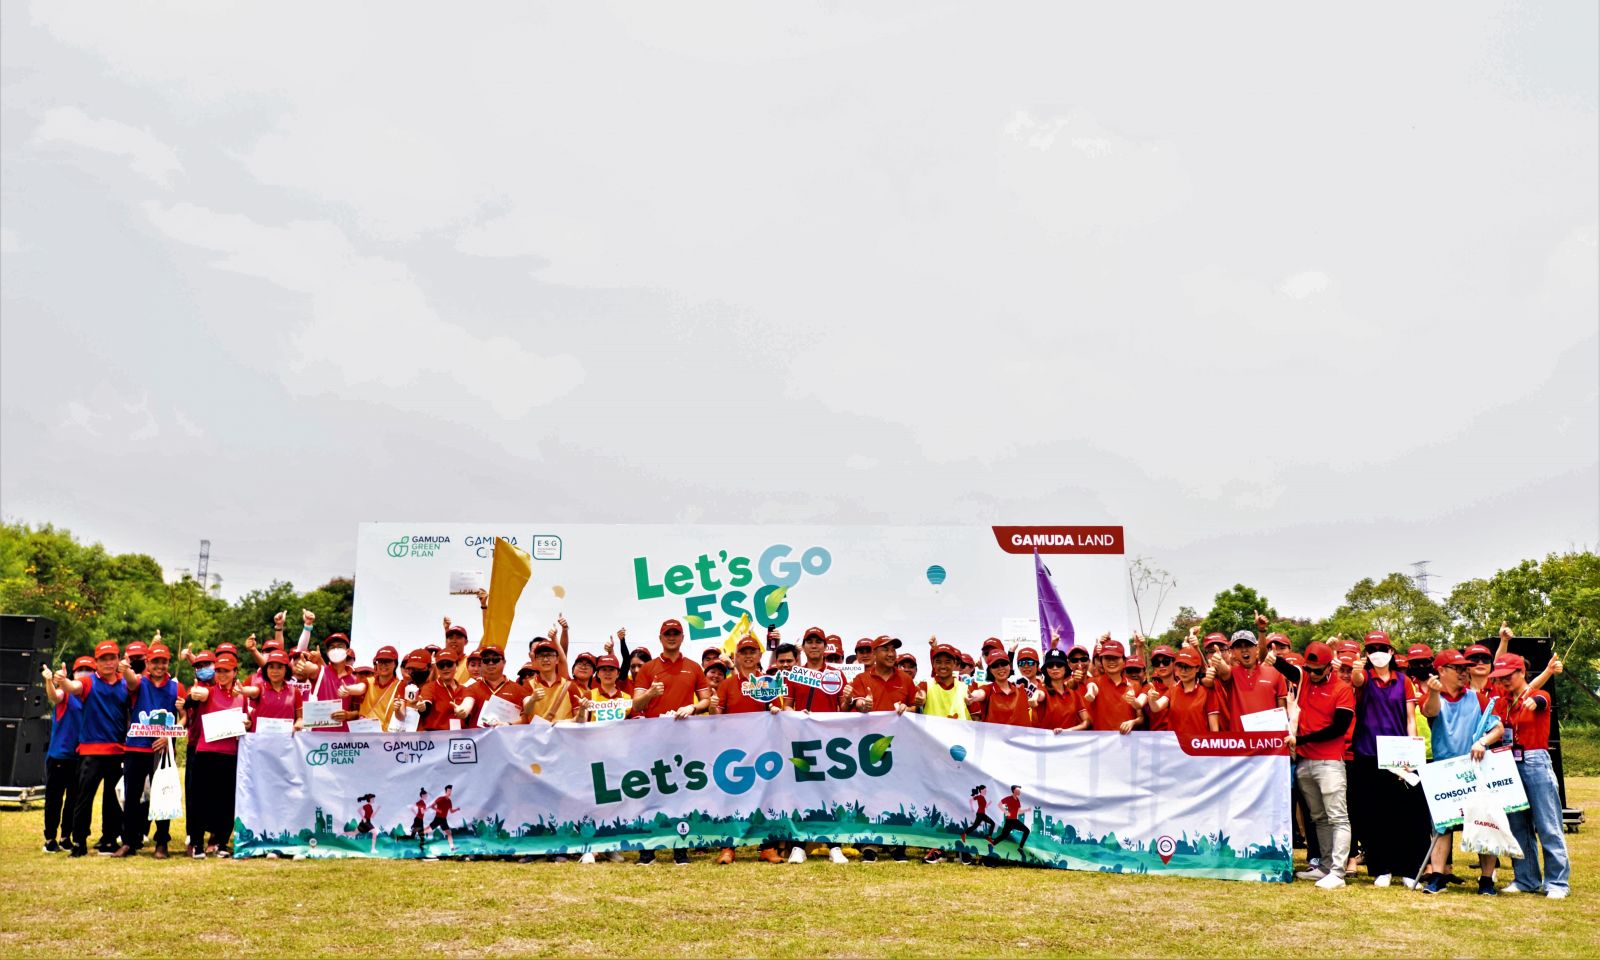  Ngày hội ESG của công ty Gamuda Land Việt Nam